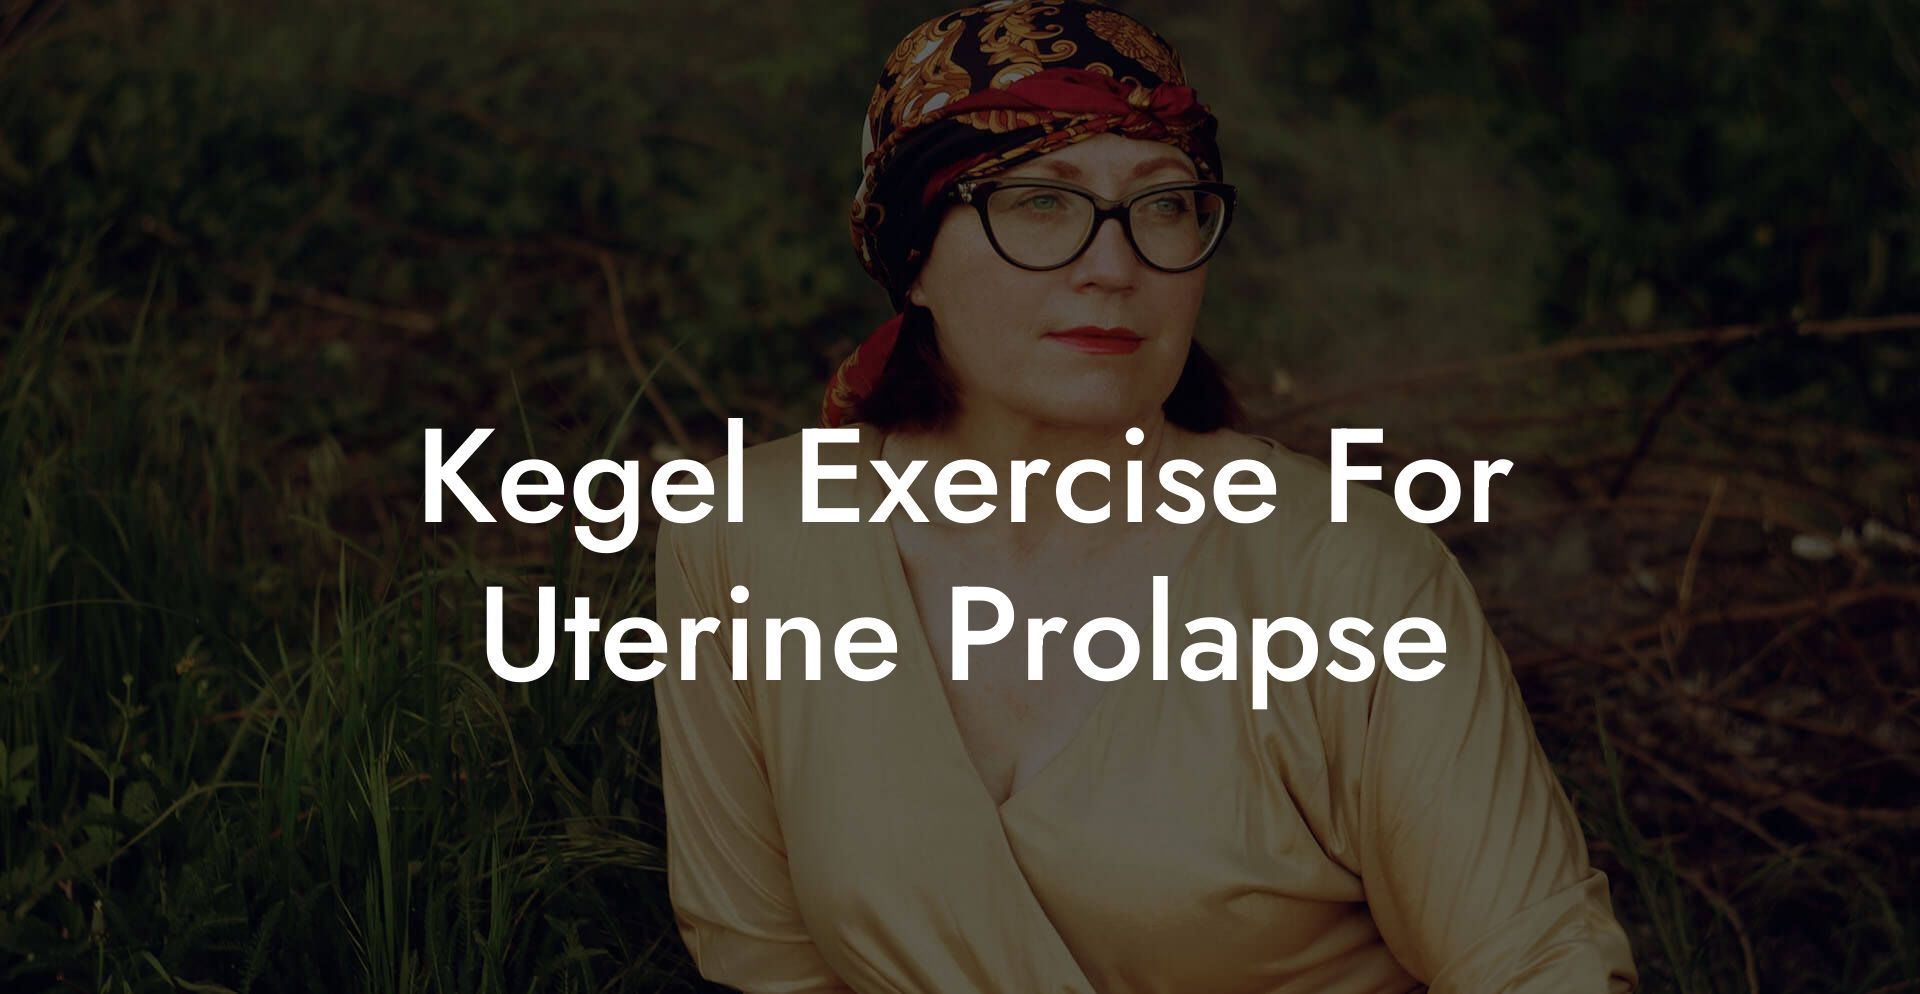 Kegel Exercise For Uterine Prolapse